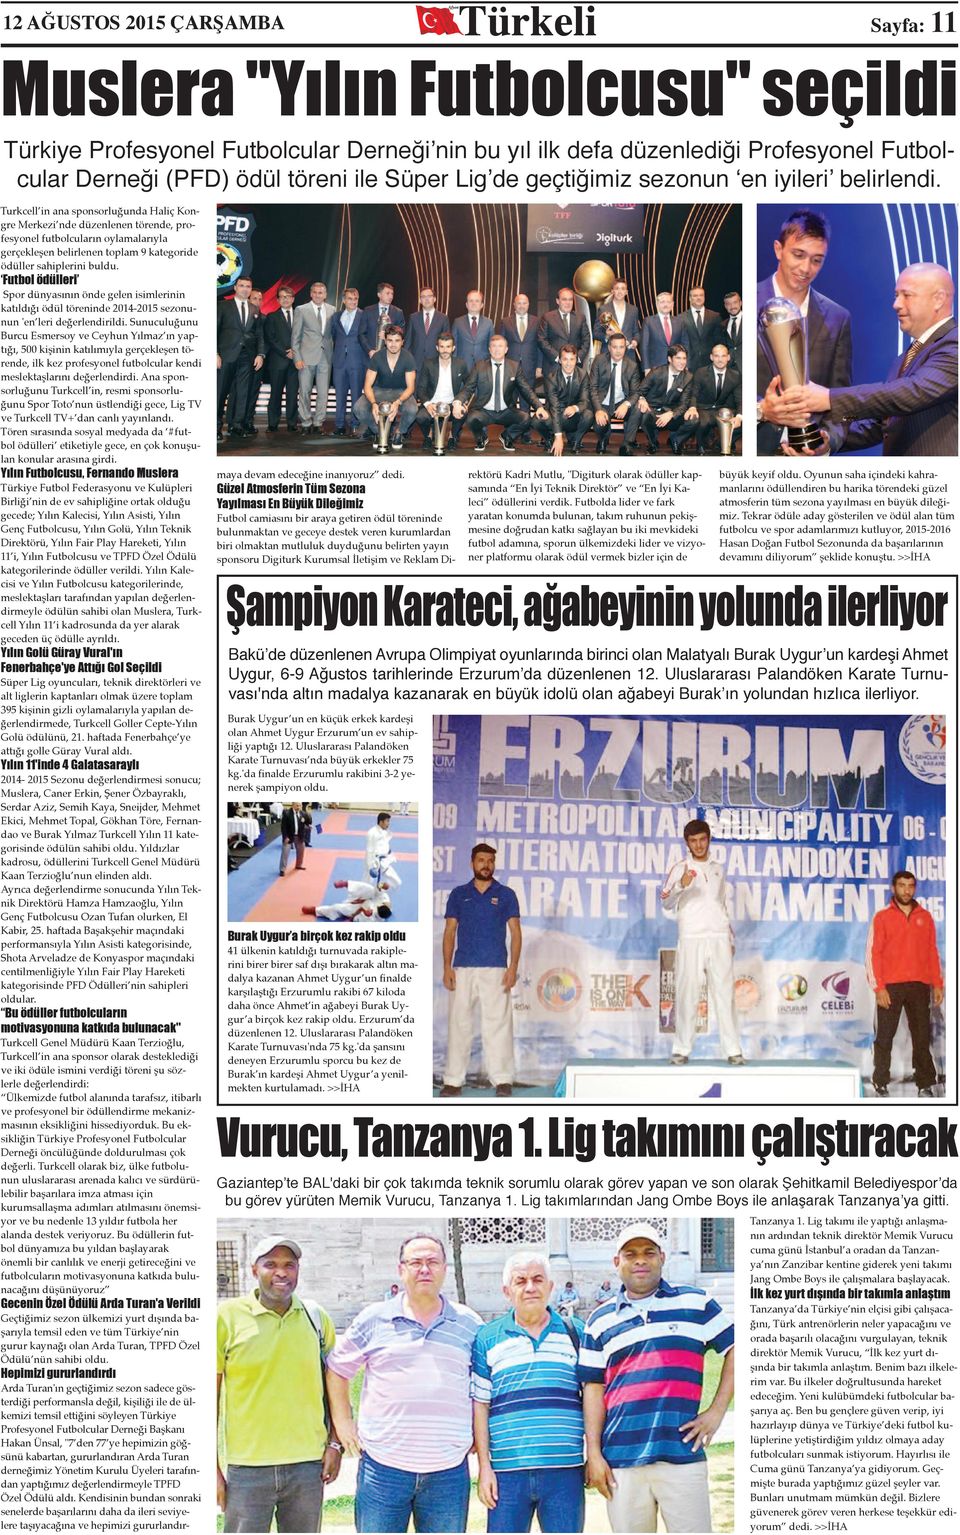 Turkcell in ana sponsorluğunda Haliç Kongre Merkezi nde düzenlenen törende, profesyonel futbolcuların oylamalarıyla gerçekleşen belirlenen toplam 9 kategoride ödüller sahiplerini buldu.